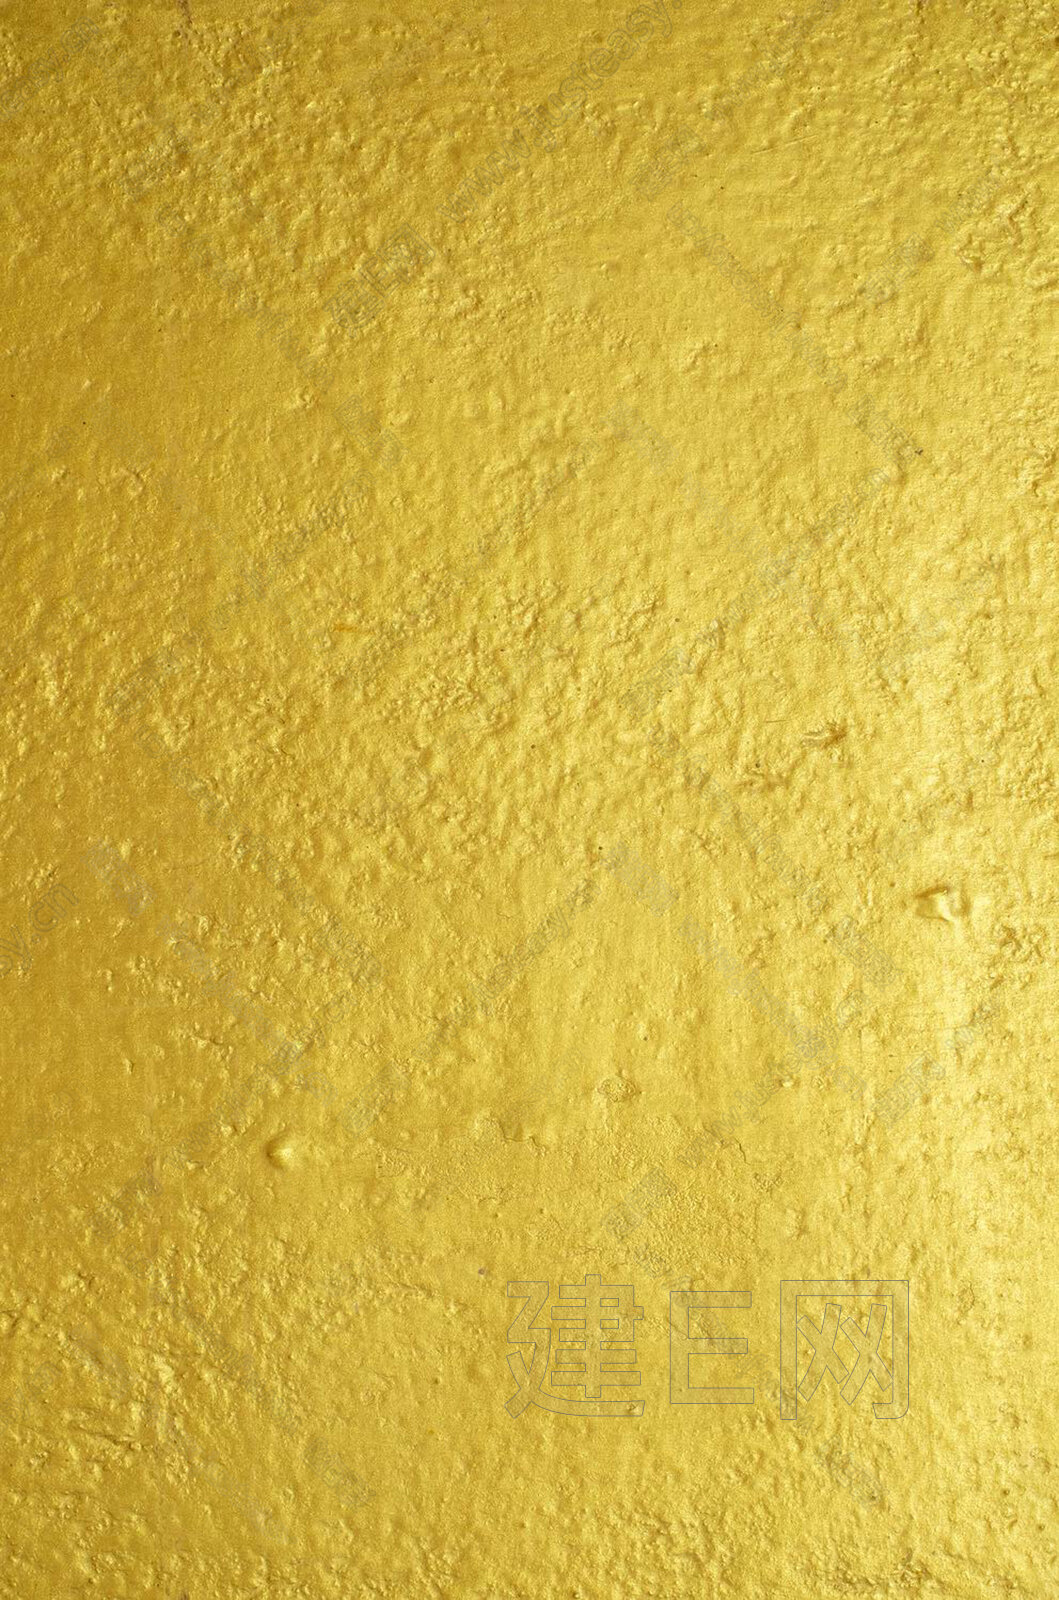 金箔壁纸价格,金箔壁纸材质怎么调,金箔壁纸品牌,金箔壁纸分类_乐天堂网